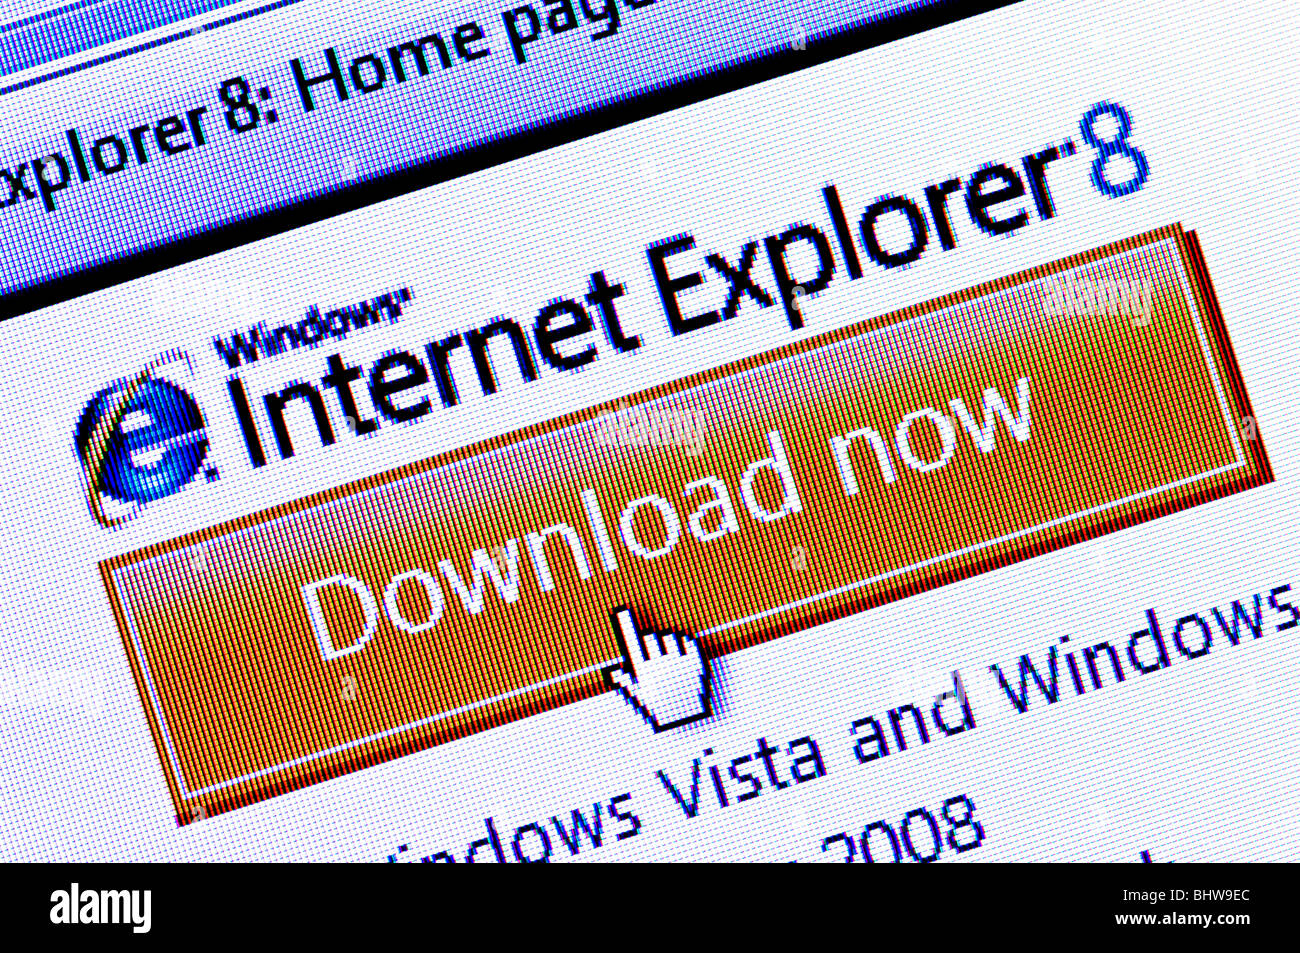 Capture d'écran de la Macro Internet Explorer 8 / l'icône de téléchargement de la barre d'option sur le site Web de Microsoft. Usage éditorial uniquement. Banque D'Images